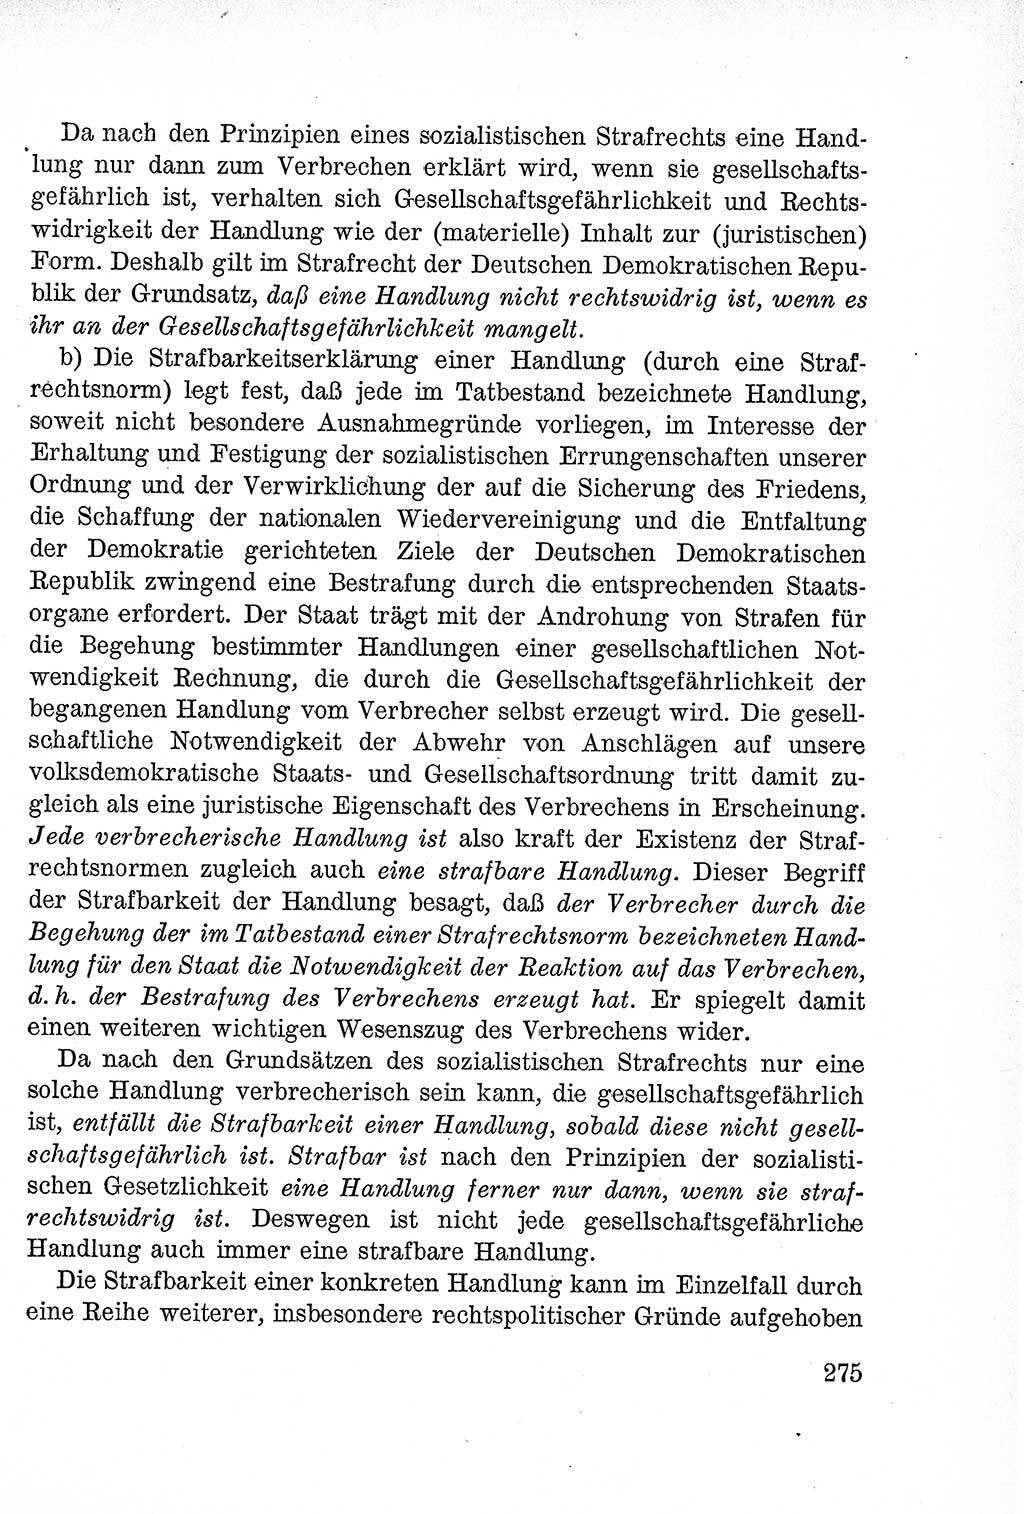 Lehrbuch des Strafrechts der Deutschen Demokratischen Republik (DDR), Allgemeiner Teil 1957, Seite 275 (Lb. Strafr. DDR AT 1957, S. 275)